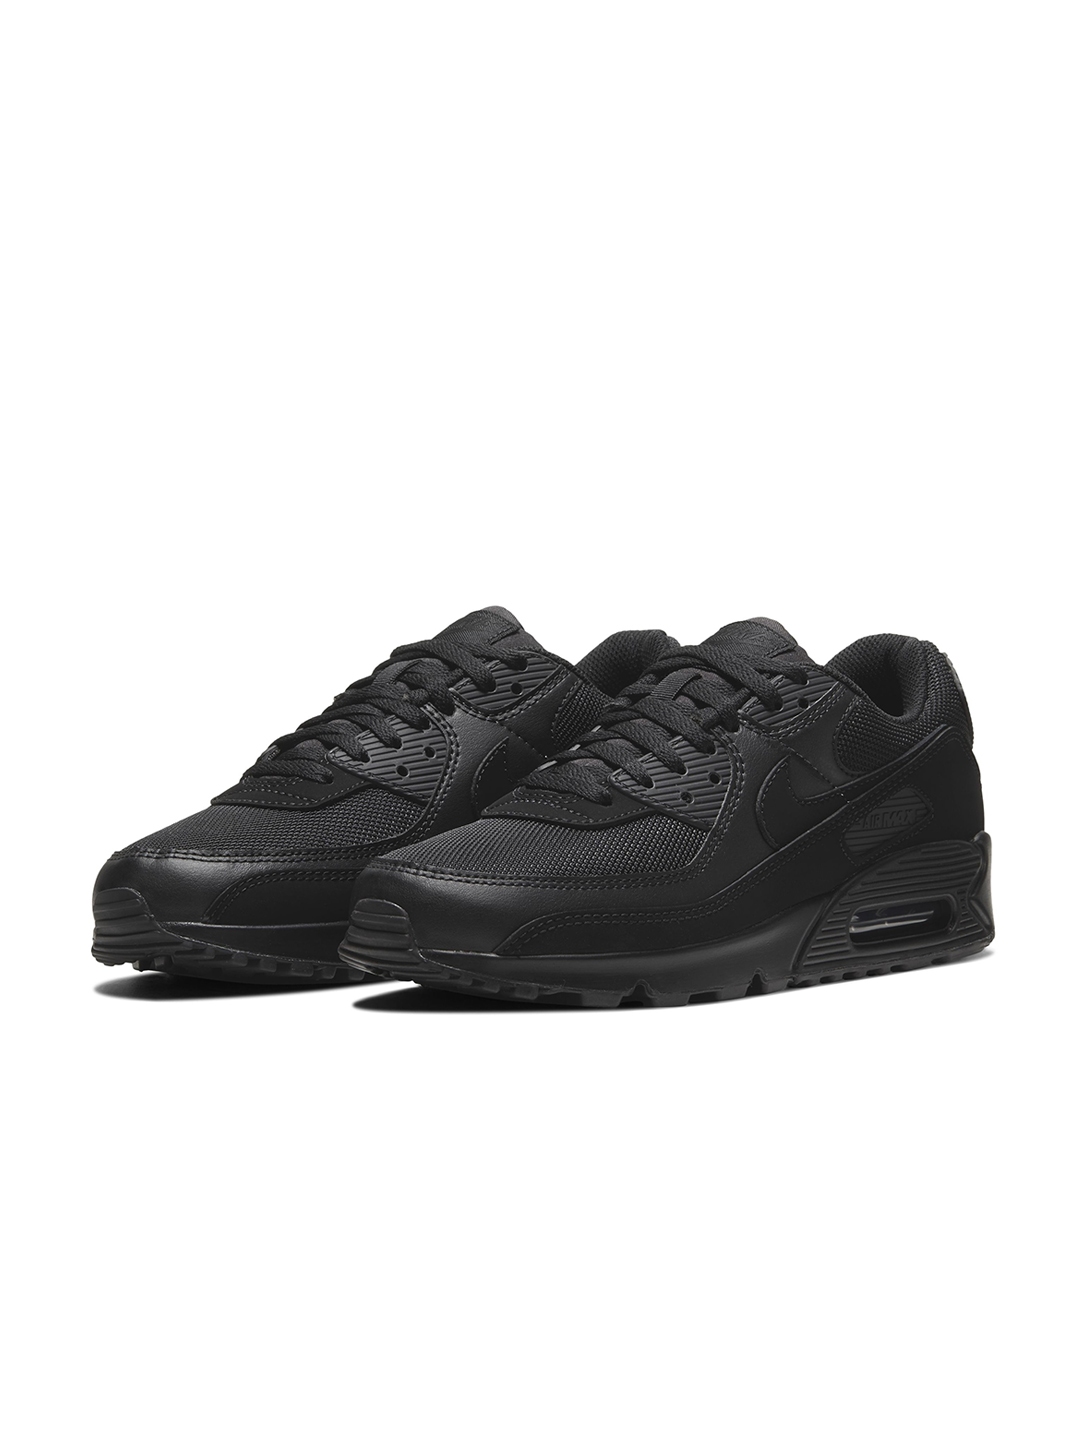 Buy Nike Men Air Max 90 Sneakers - Casual Shoes for Men 24109728 | Myntra